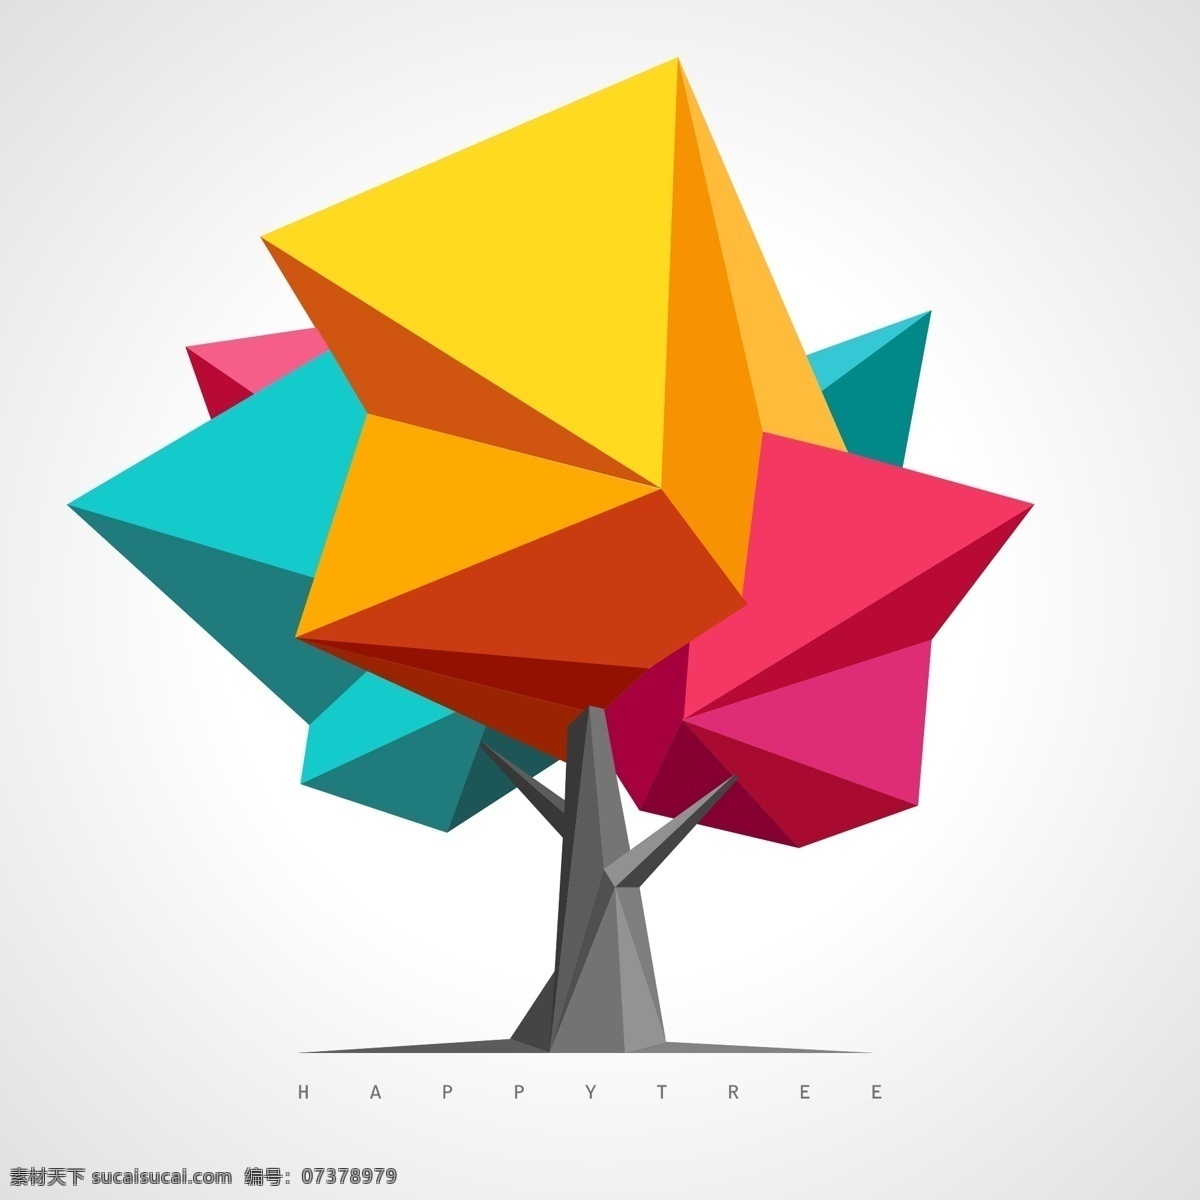 彩色几何树 折纸 几何图形 树木 植物 创意图形 抽象植物 logo 简化植物树 设计分层素材 分层